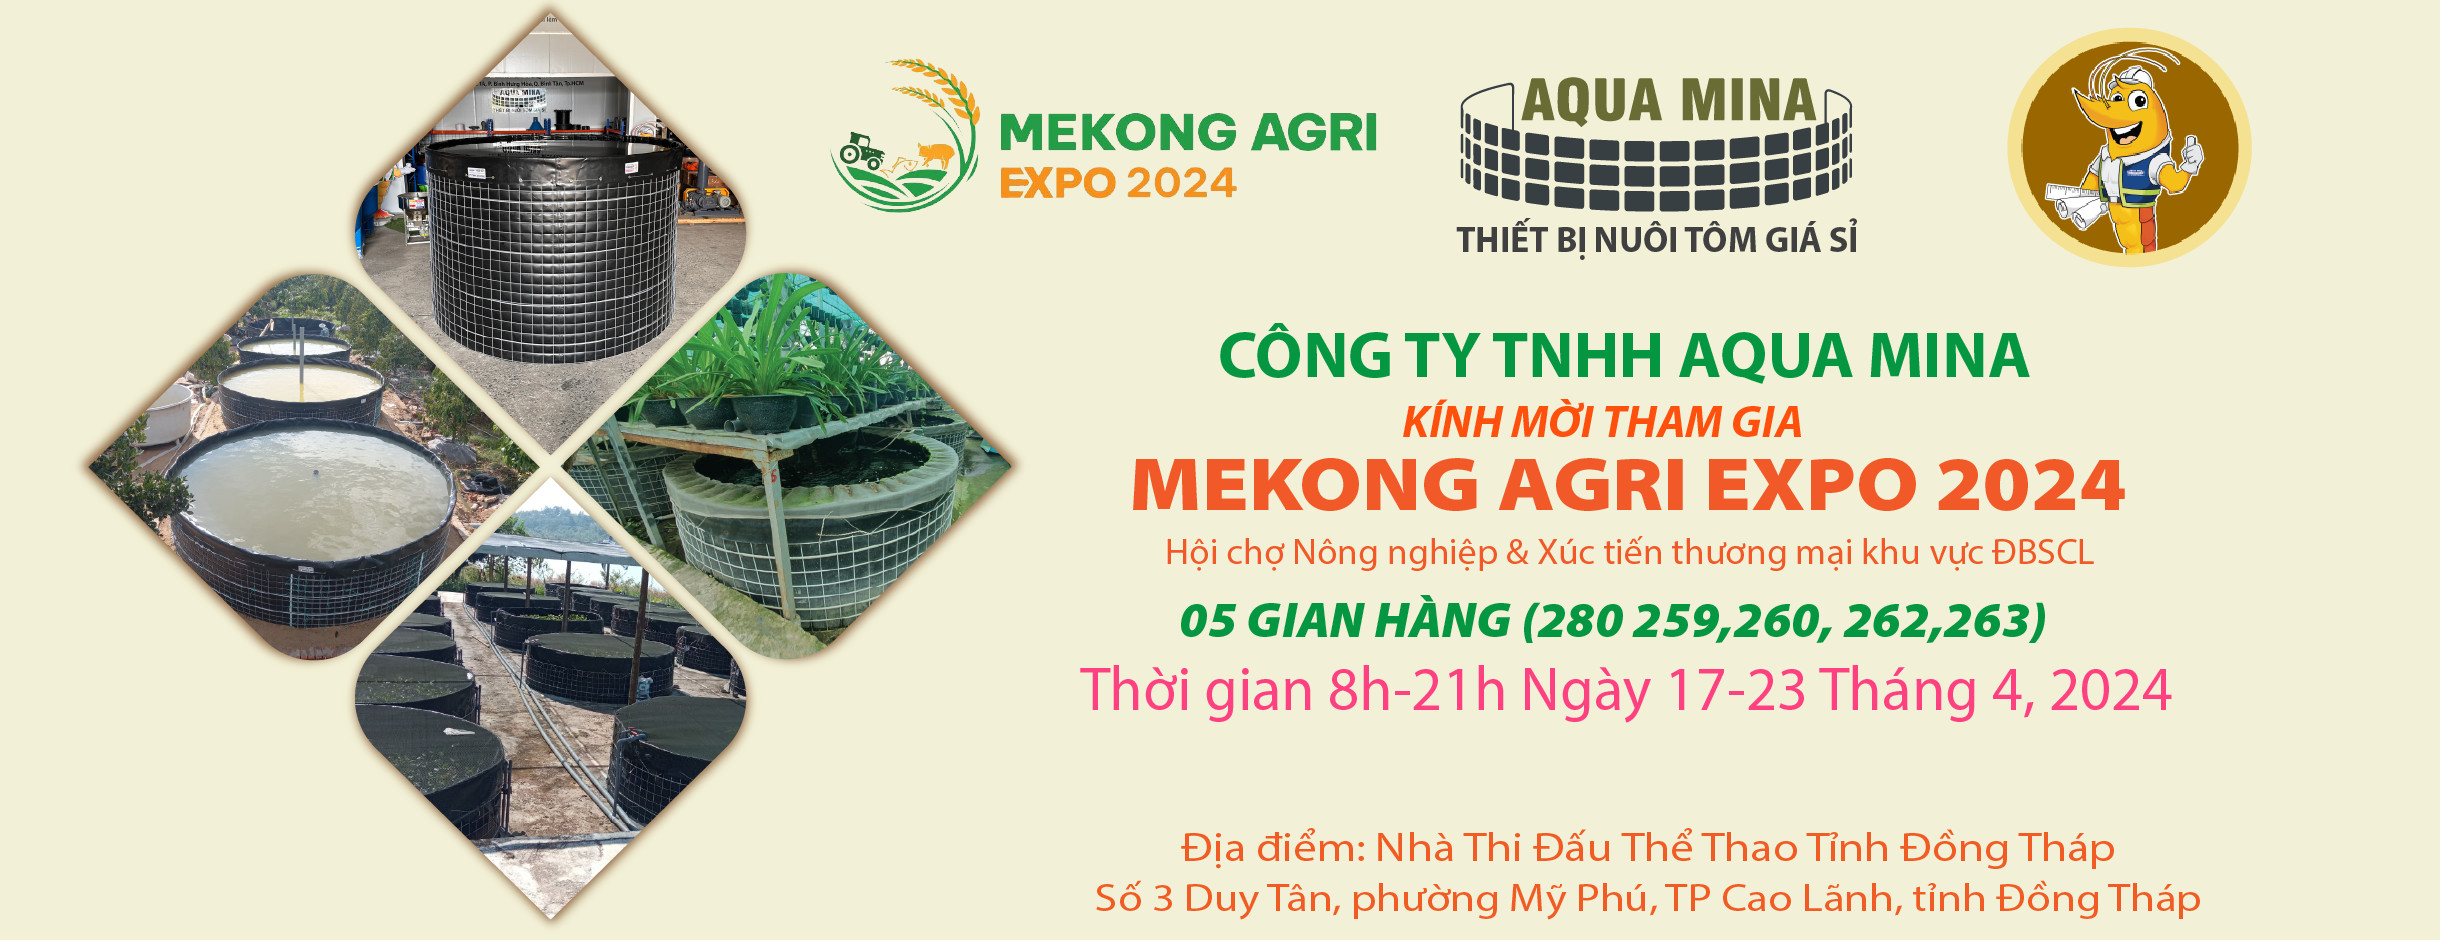 Aqua Mina có mặt tại Mekong Agri Expo 2024